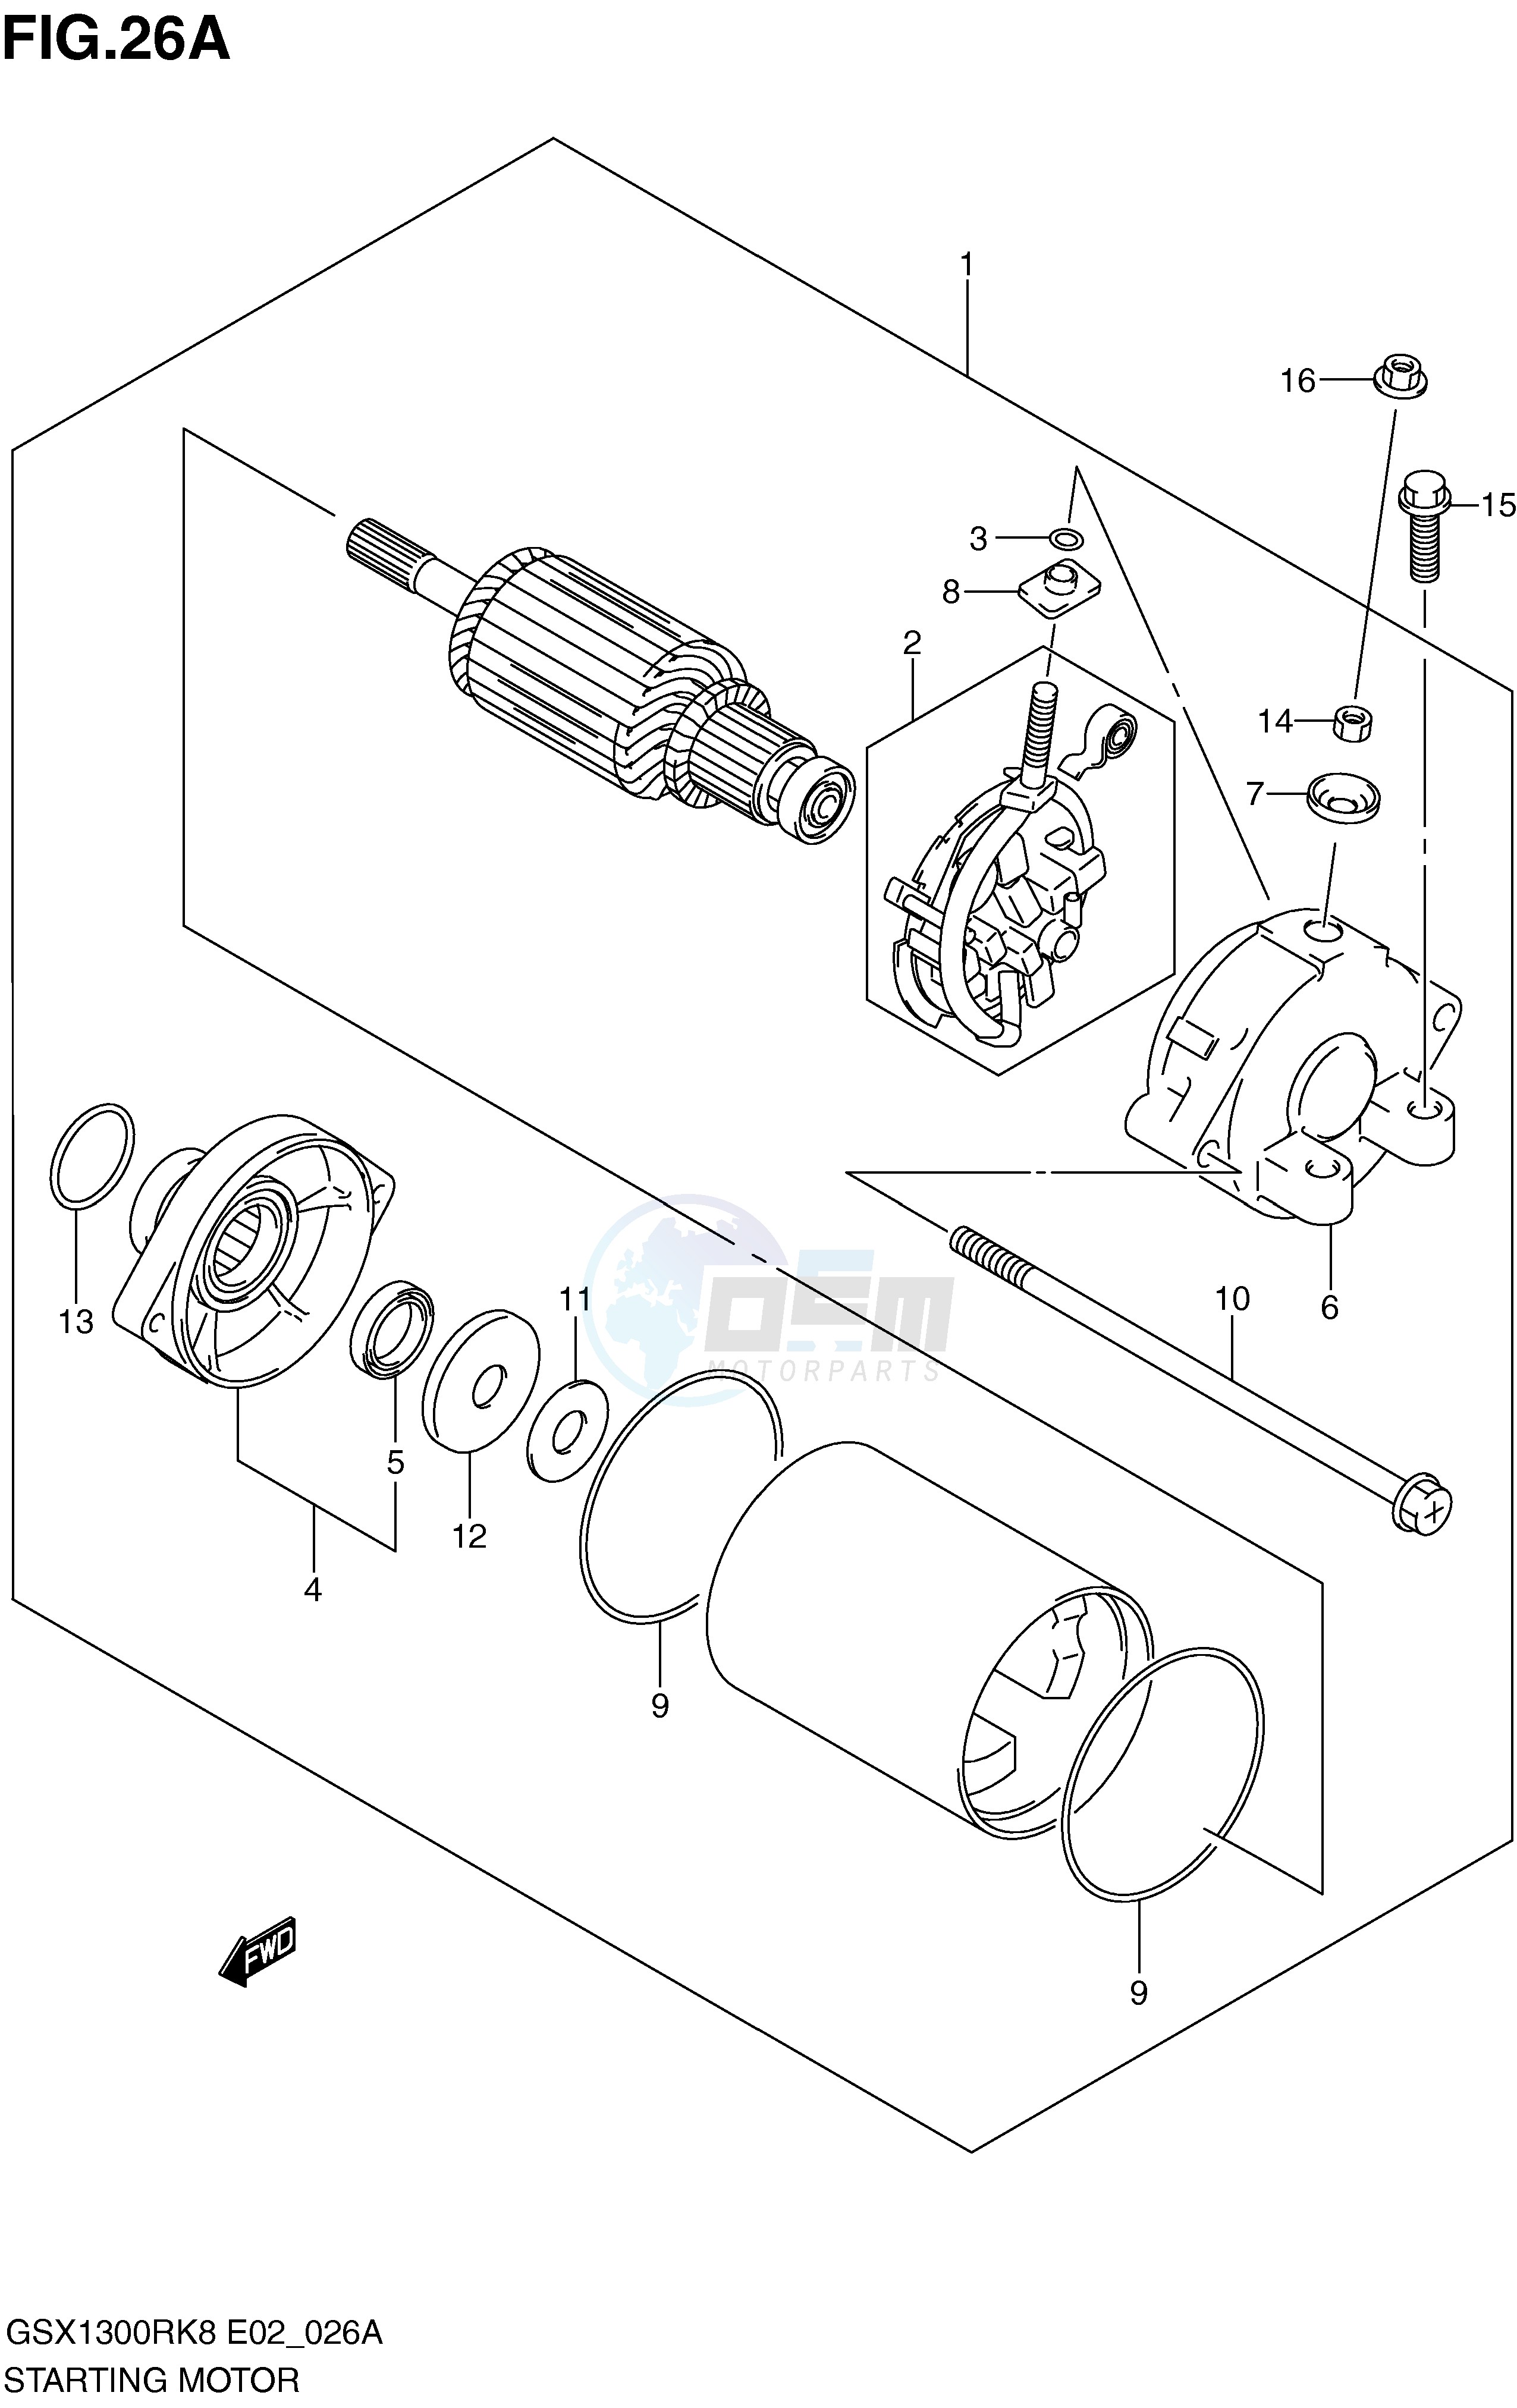 STARTING MOTOR (MODEL K9 E14,MODEL L0) blueprint